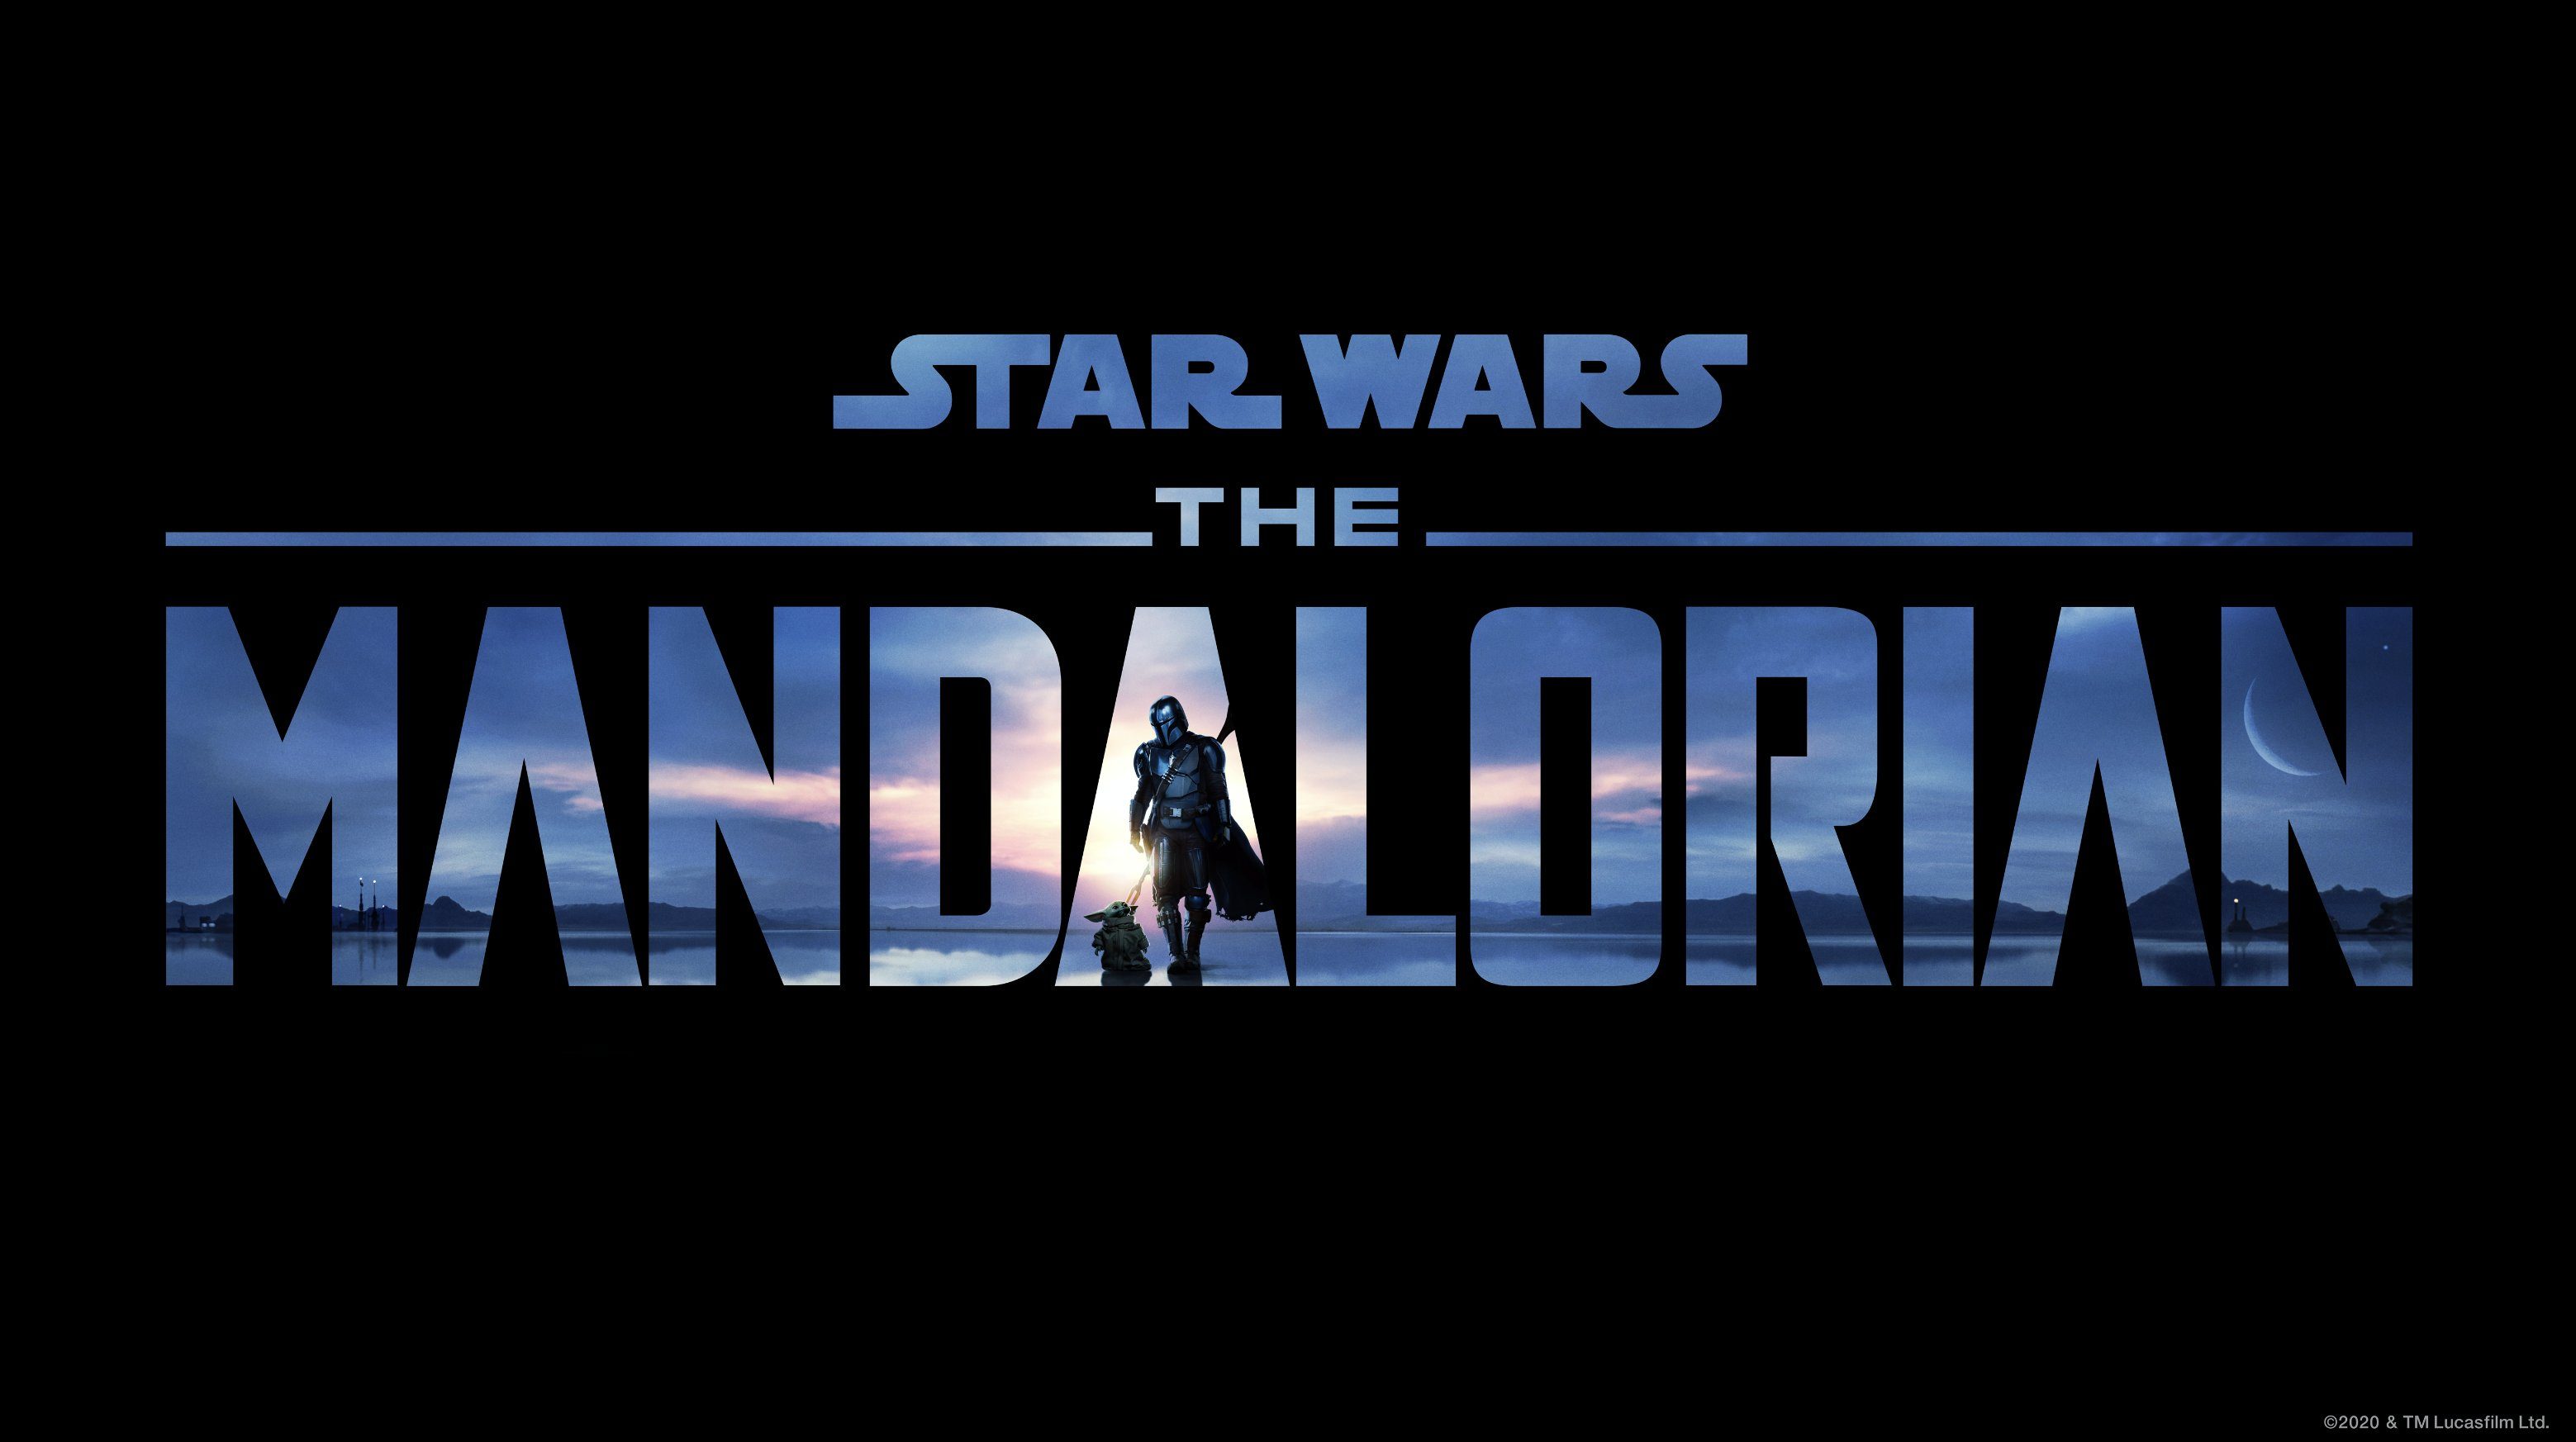 ‘The Mandalorian’ sets season two premiere date